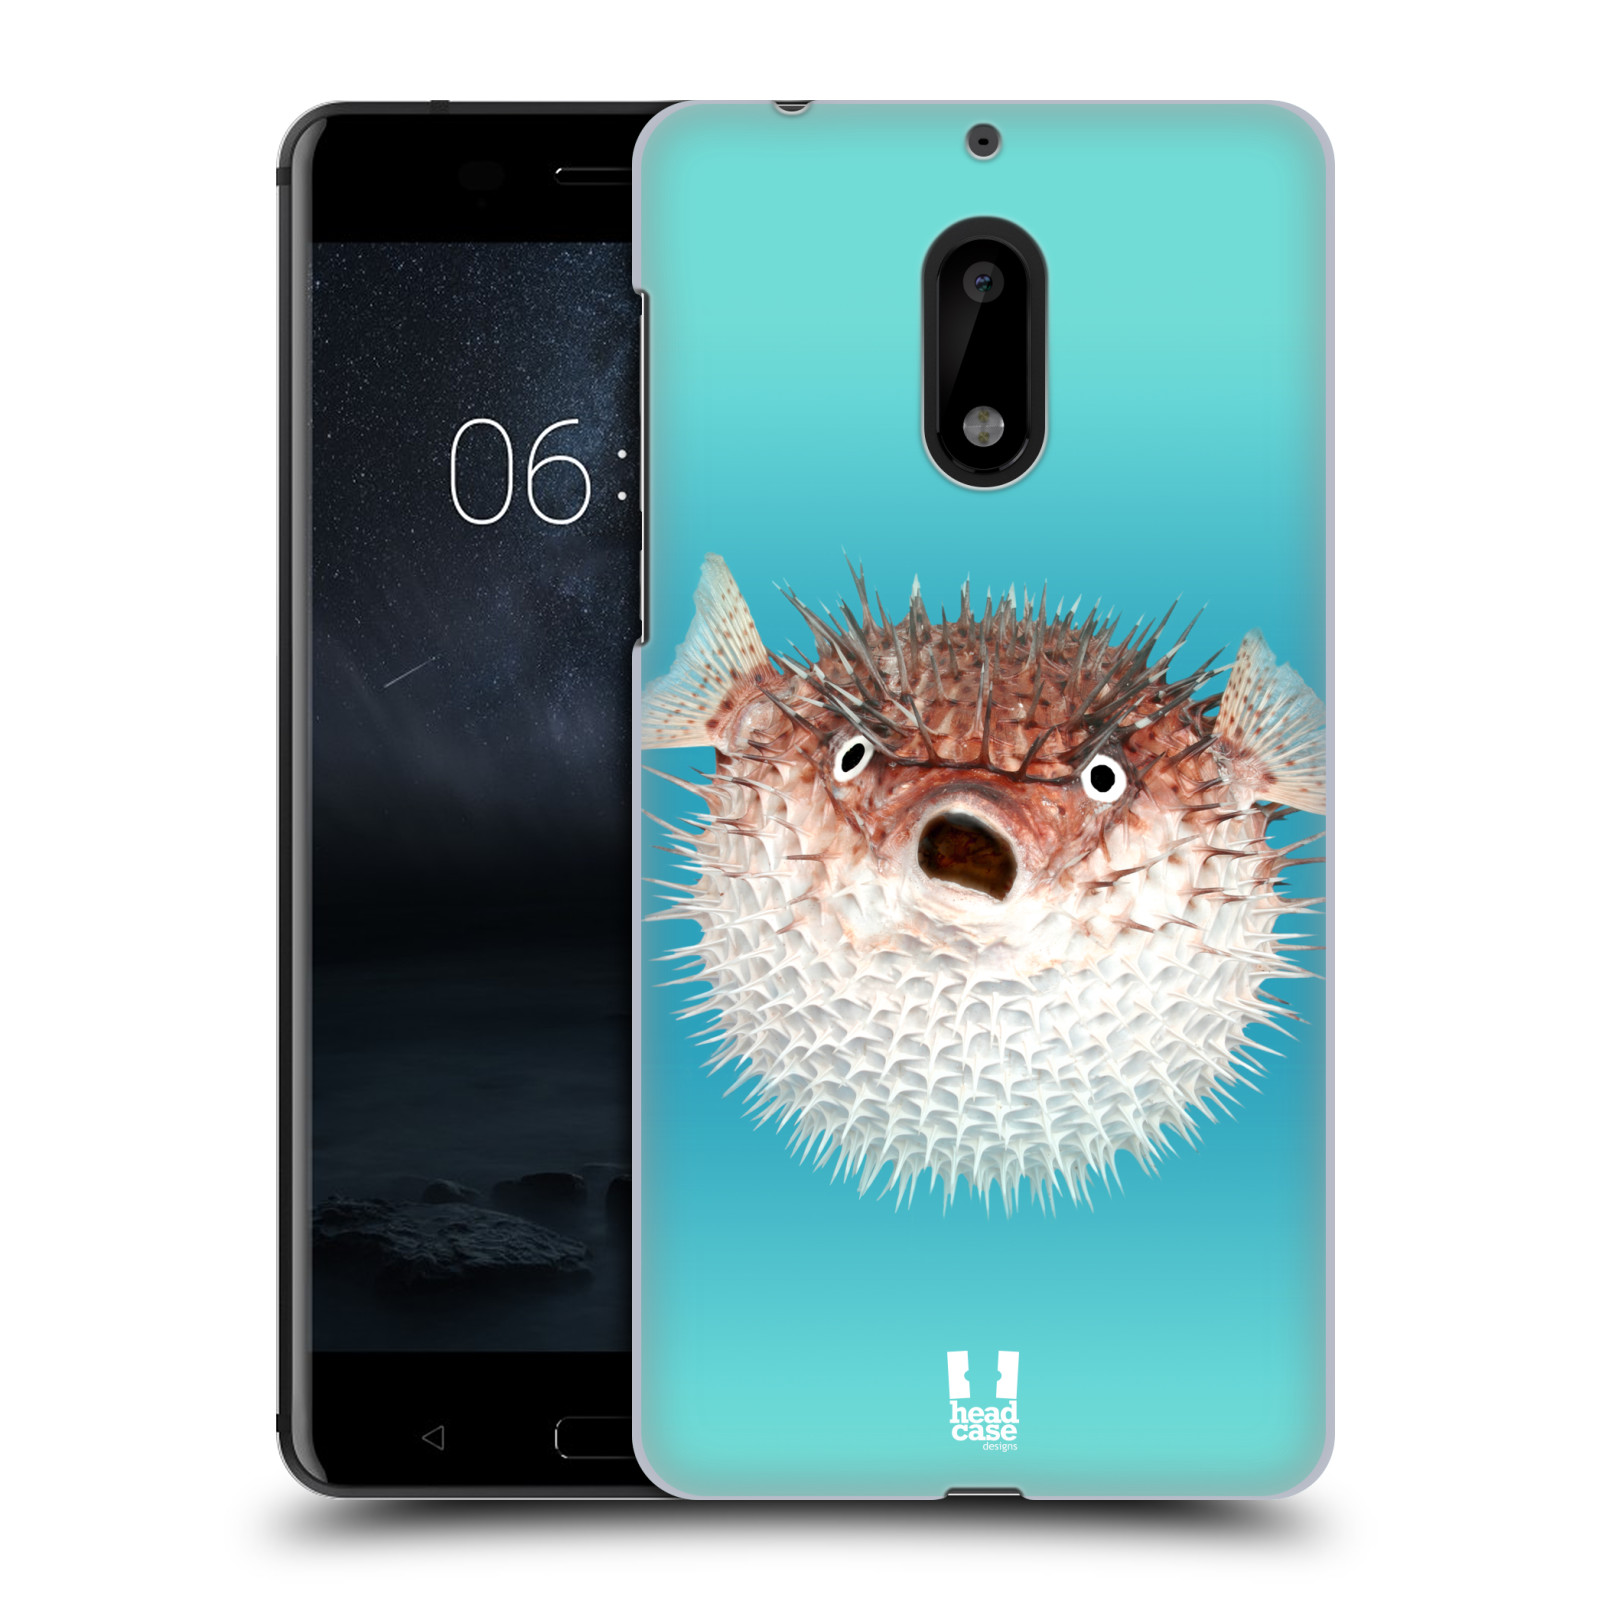 HEAD CASE plastový obal na mobil Nokia 6 vzor slavná zvířata foto ježík hnědý